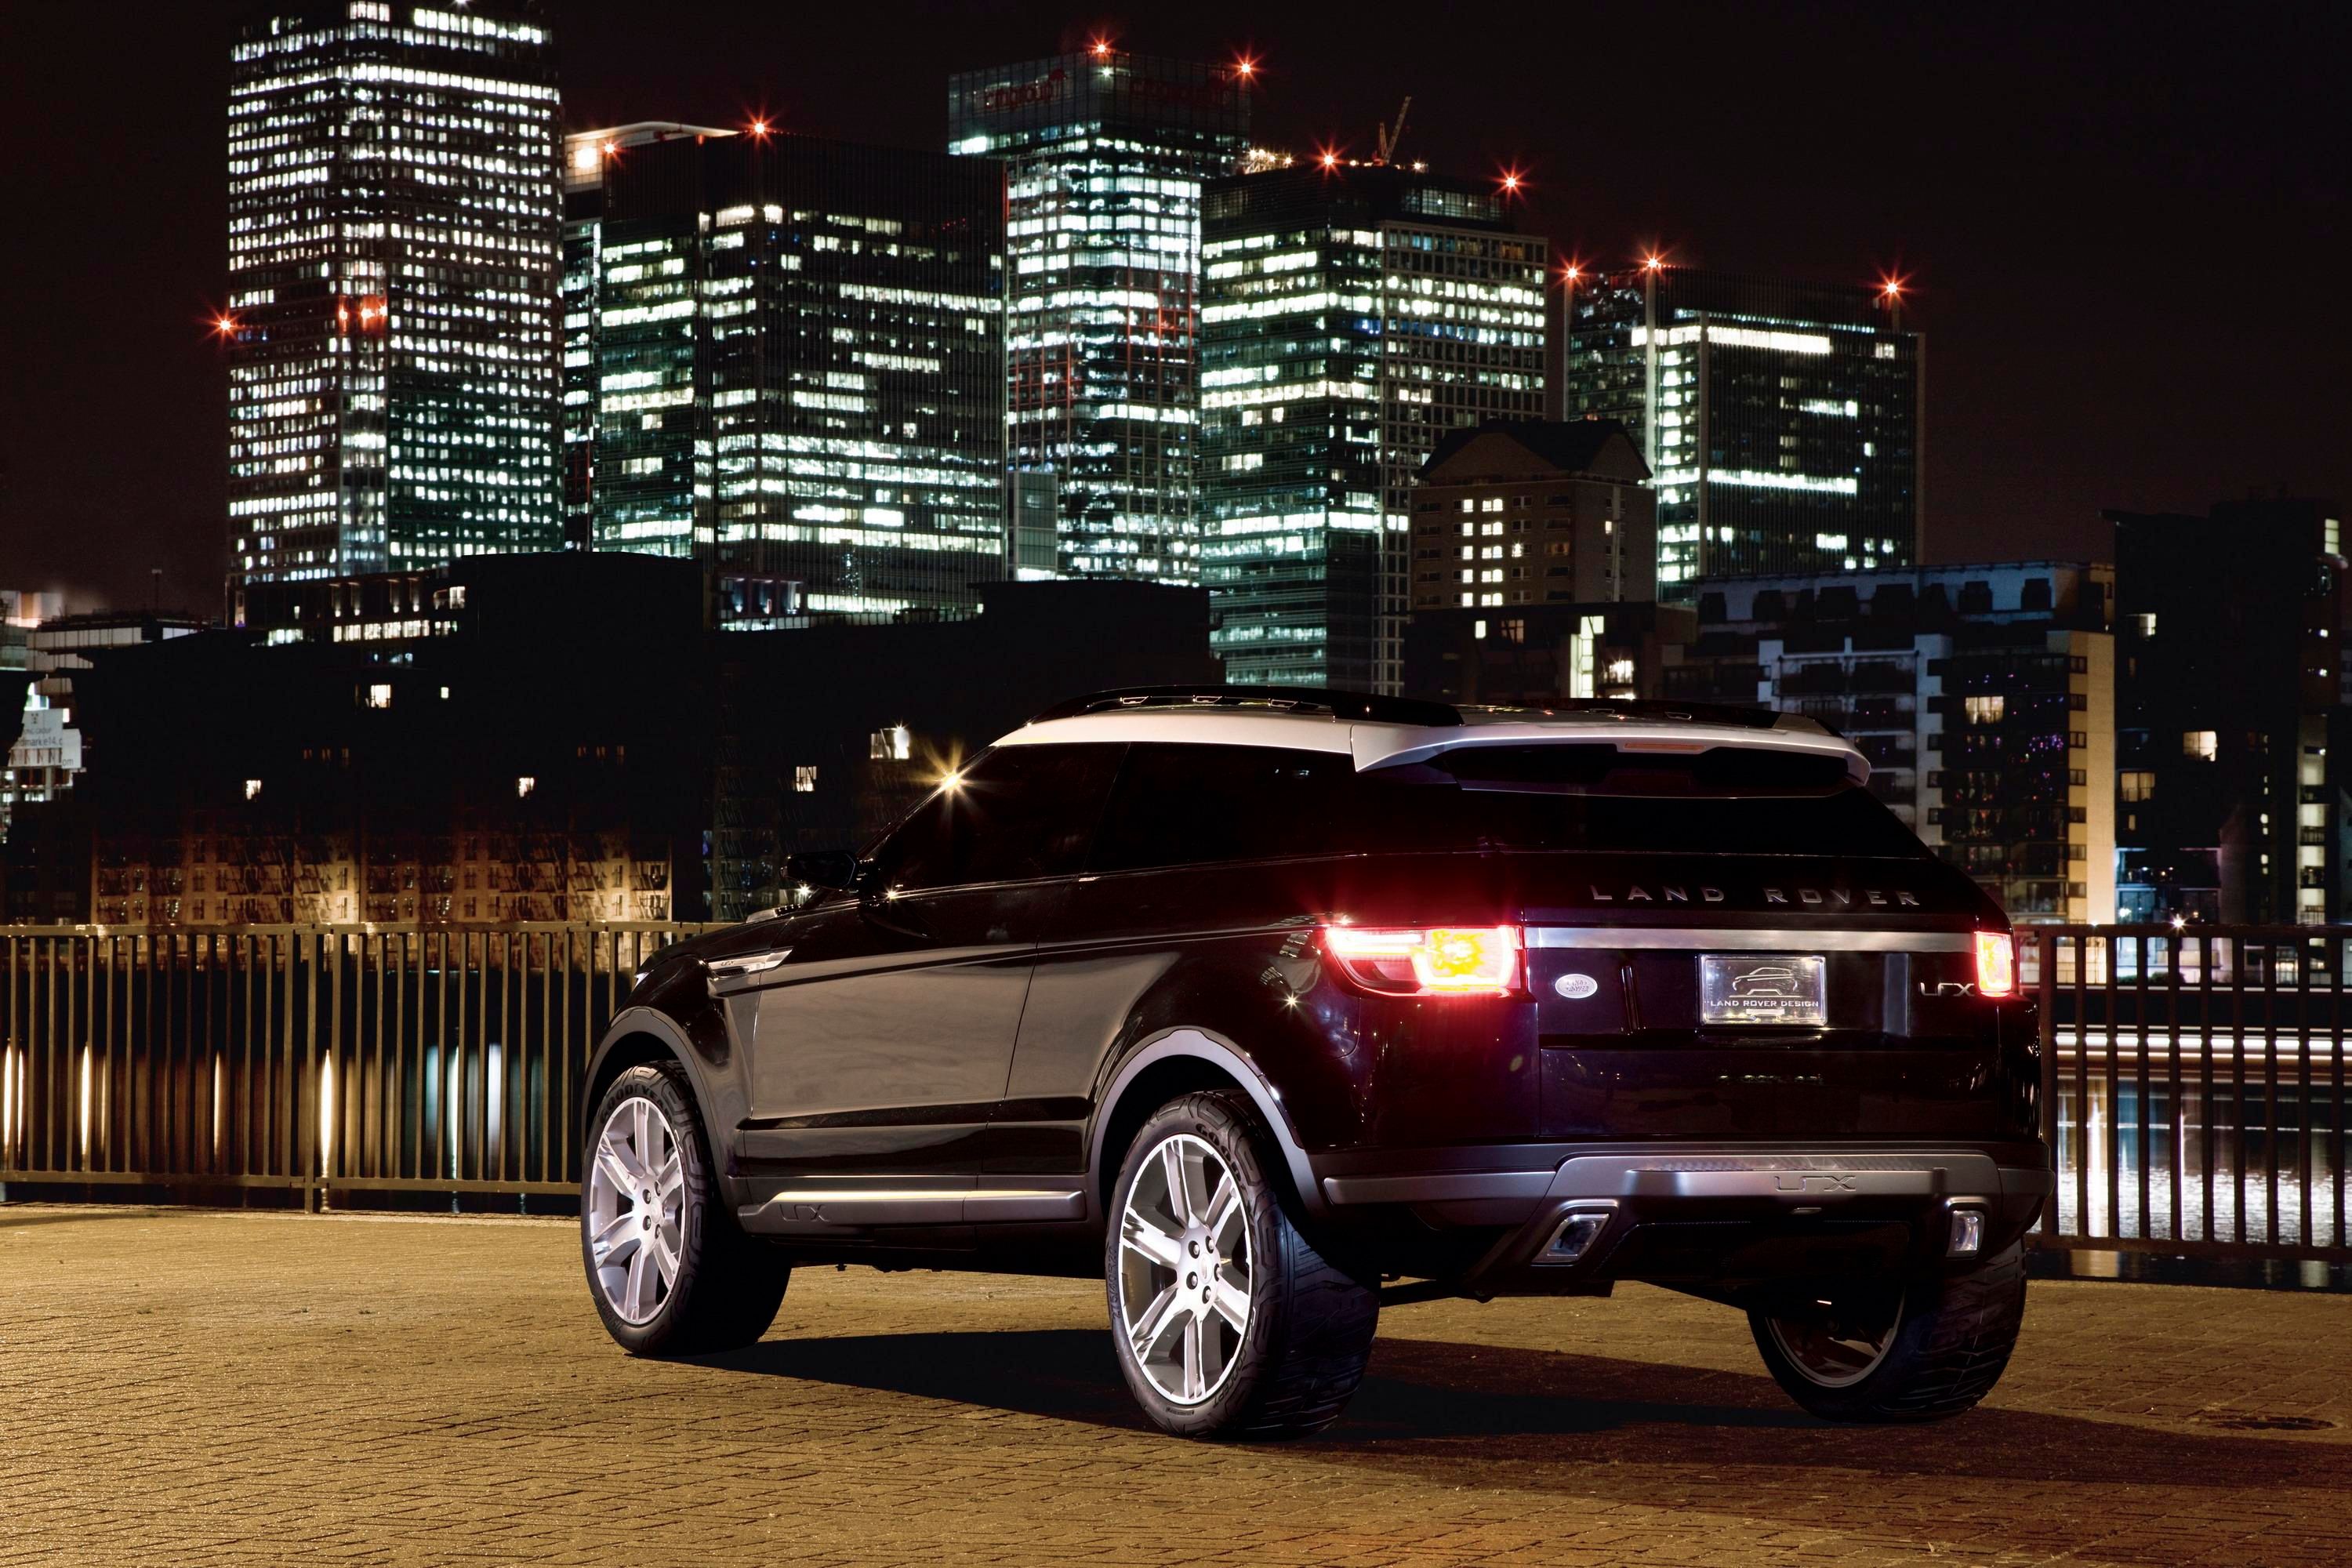 2008 Land Rover LRX Concept Black & Silver